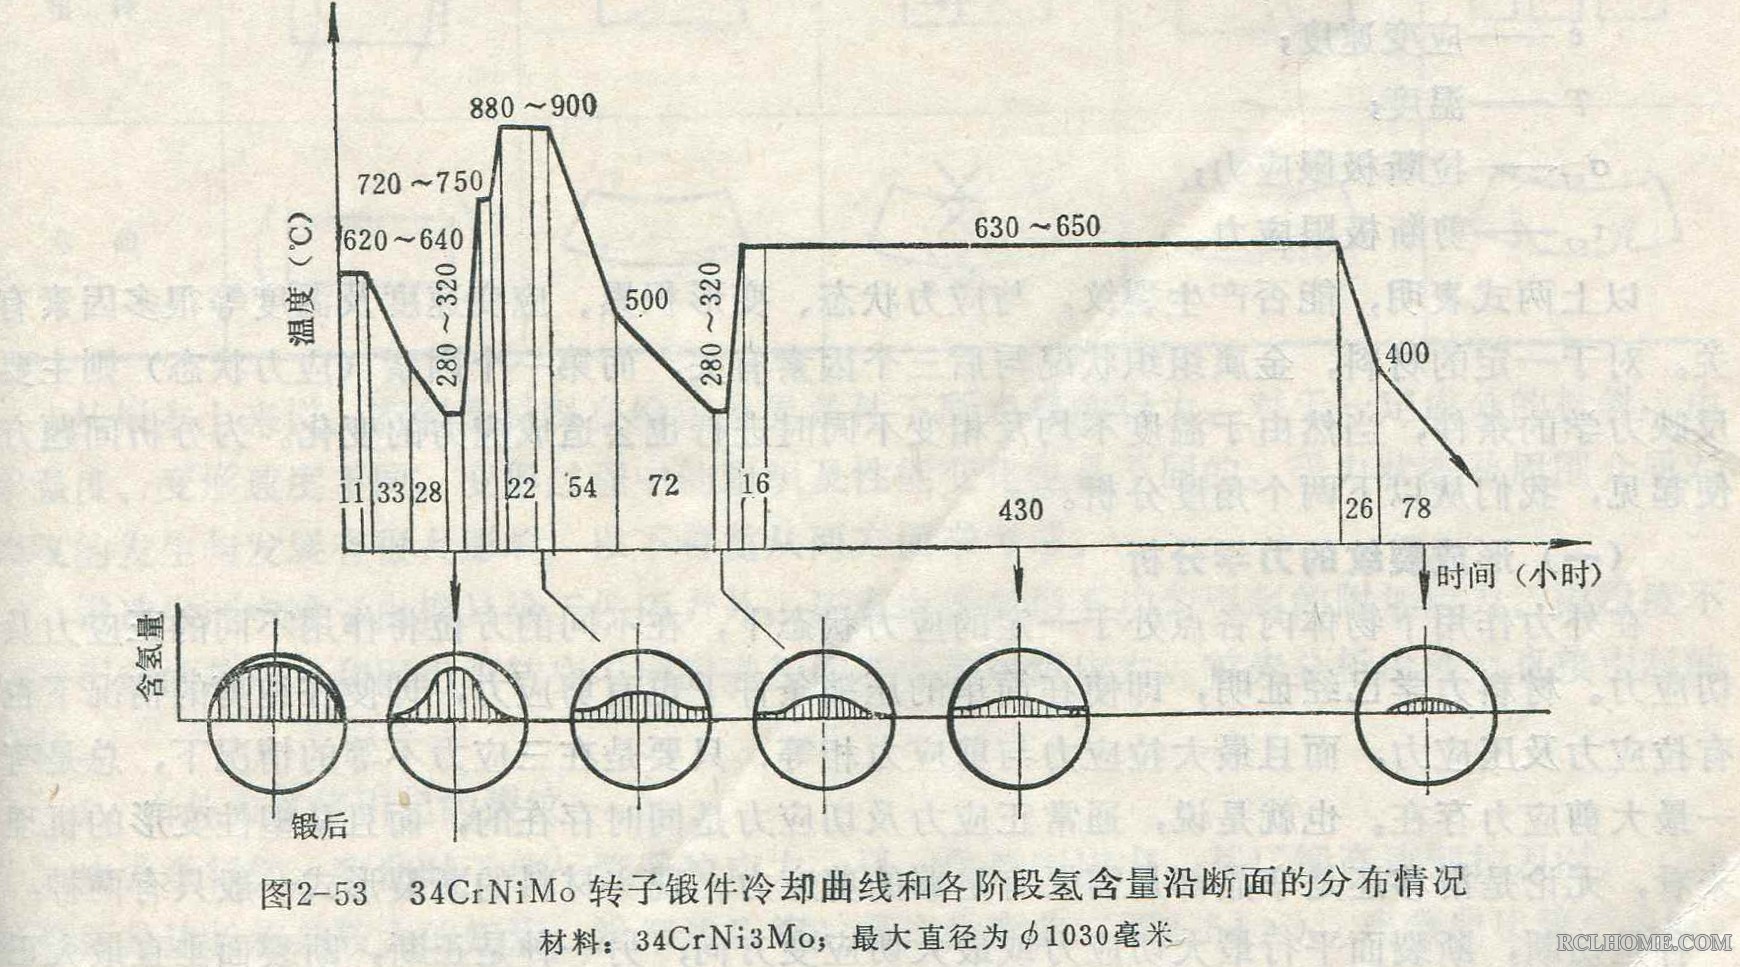 34CrNi3Mo转子锻件冷却曲线既各阶段氢含量沿断面的分布情况.jpg